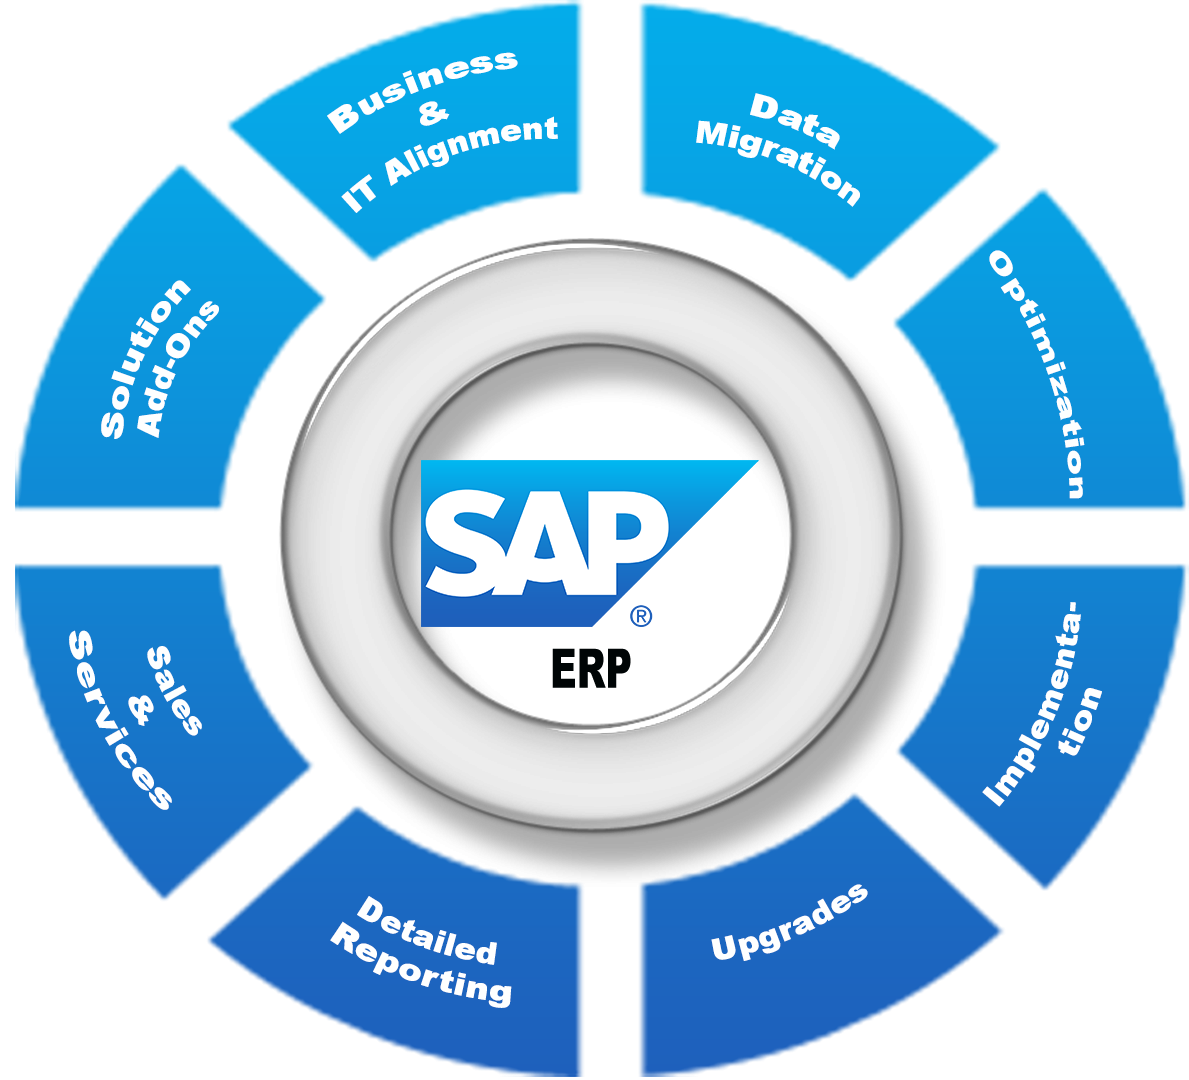 Phần mềm SAP là gì? Ứng dụng của phần mềm SAP trong quản trị chuỗi cung ứng